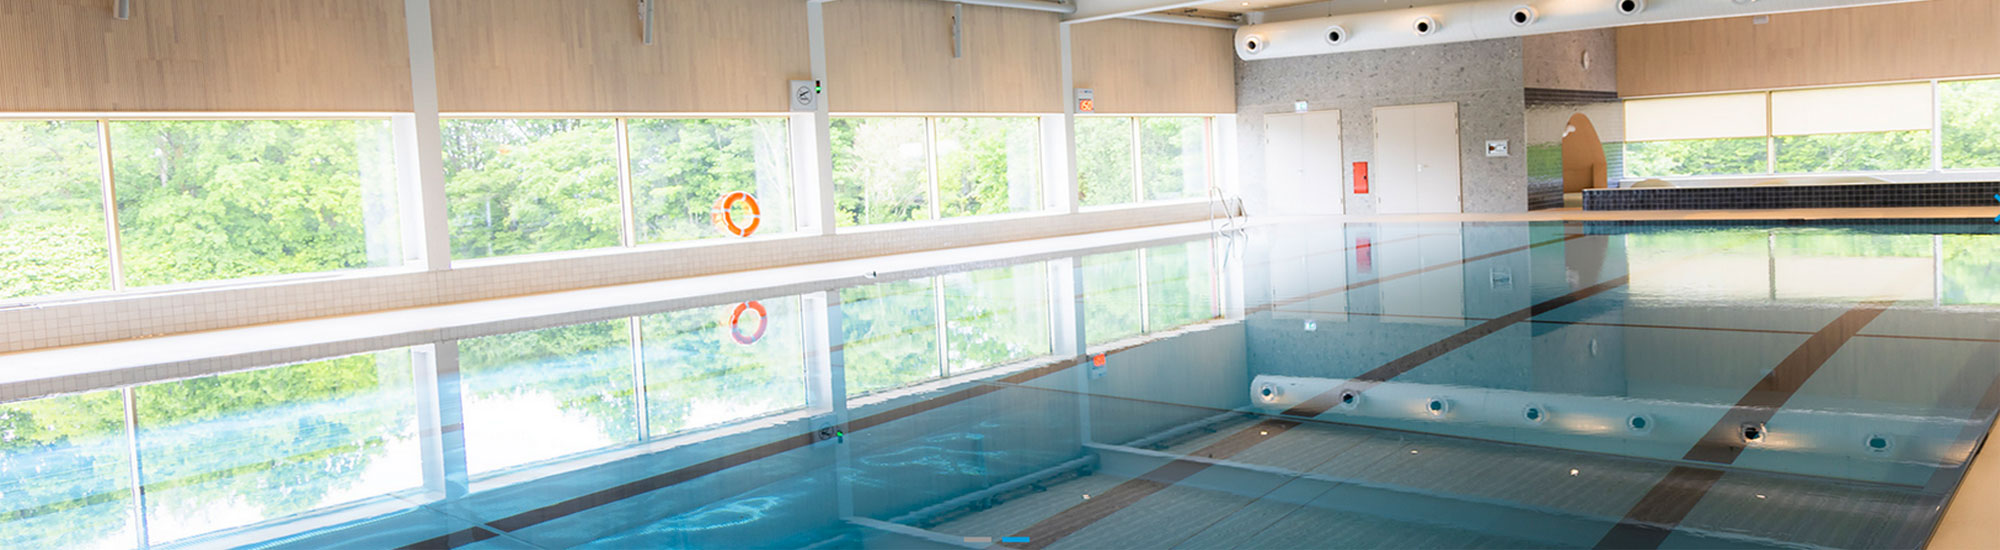 HaseBäder Schwimmsport und Badespaß Ohase - das Hallenbad in Ankum & das Freibad in Bersenbrück